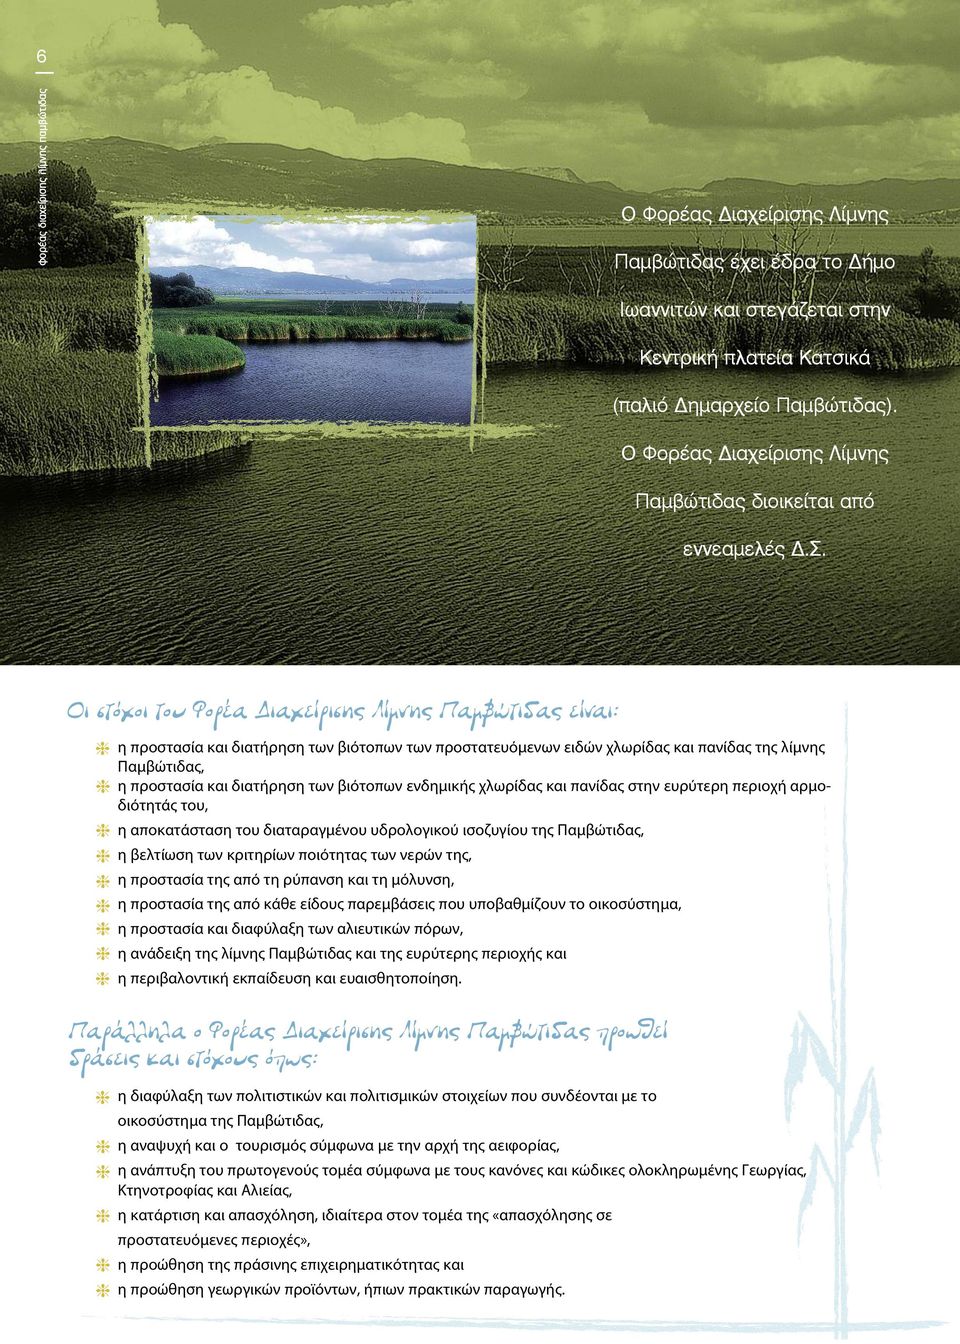 Οι στόχοι του Φορέα Διαχείρισης Λίμνης Παμβώτιδας είναι: h η προστασία και διατήρηση των βιότοπων των προστατευόμενων ειδών χλωρίδας και πανίδας της λίμνης Παμβώτιδας, h η προστασία και διατήρηση των